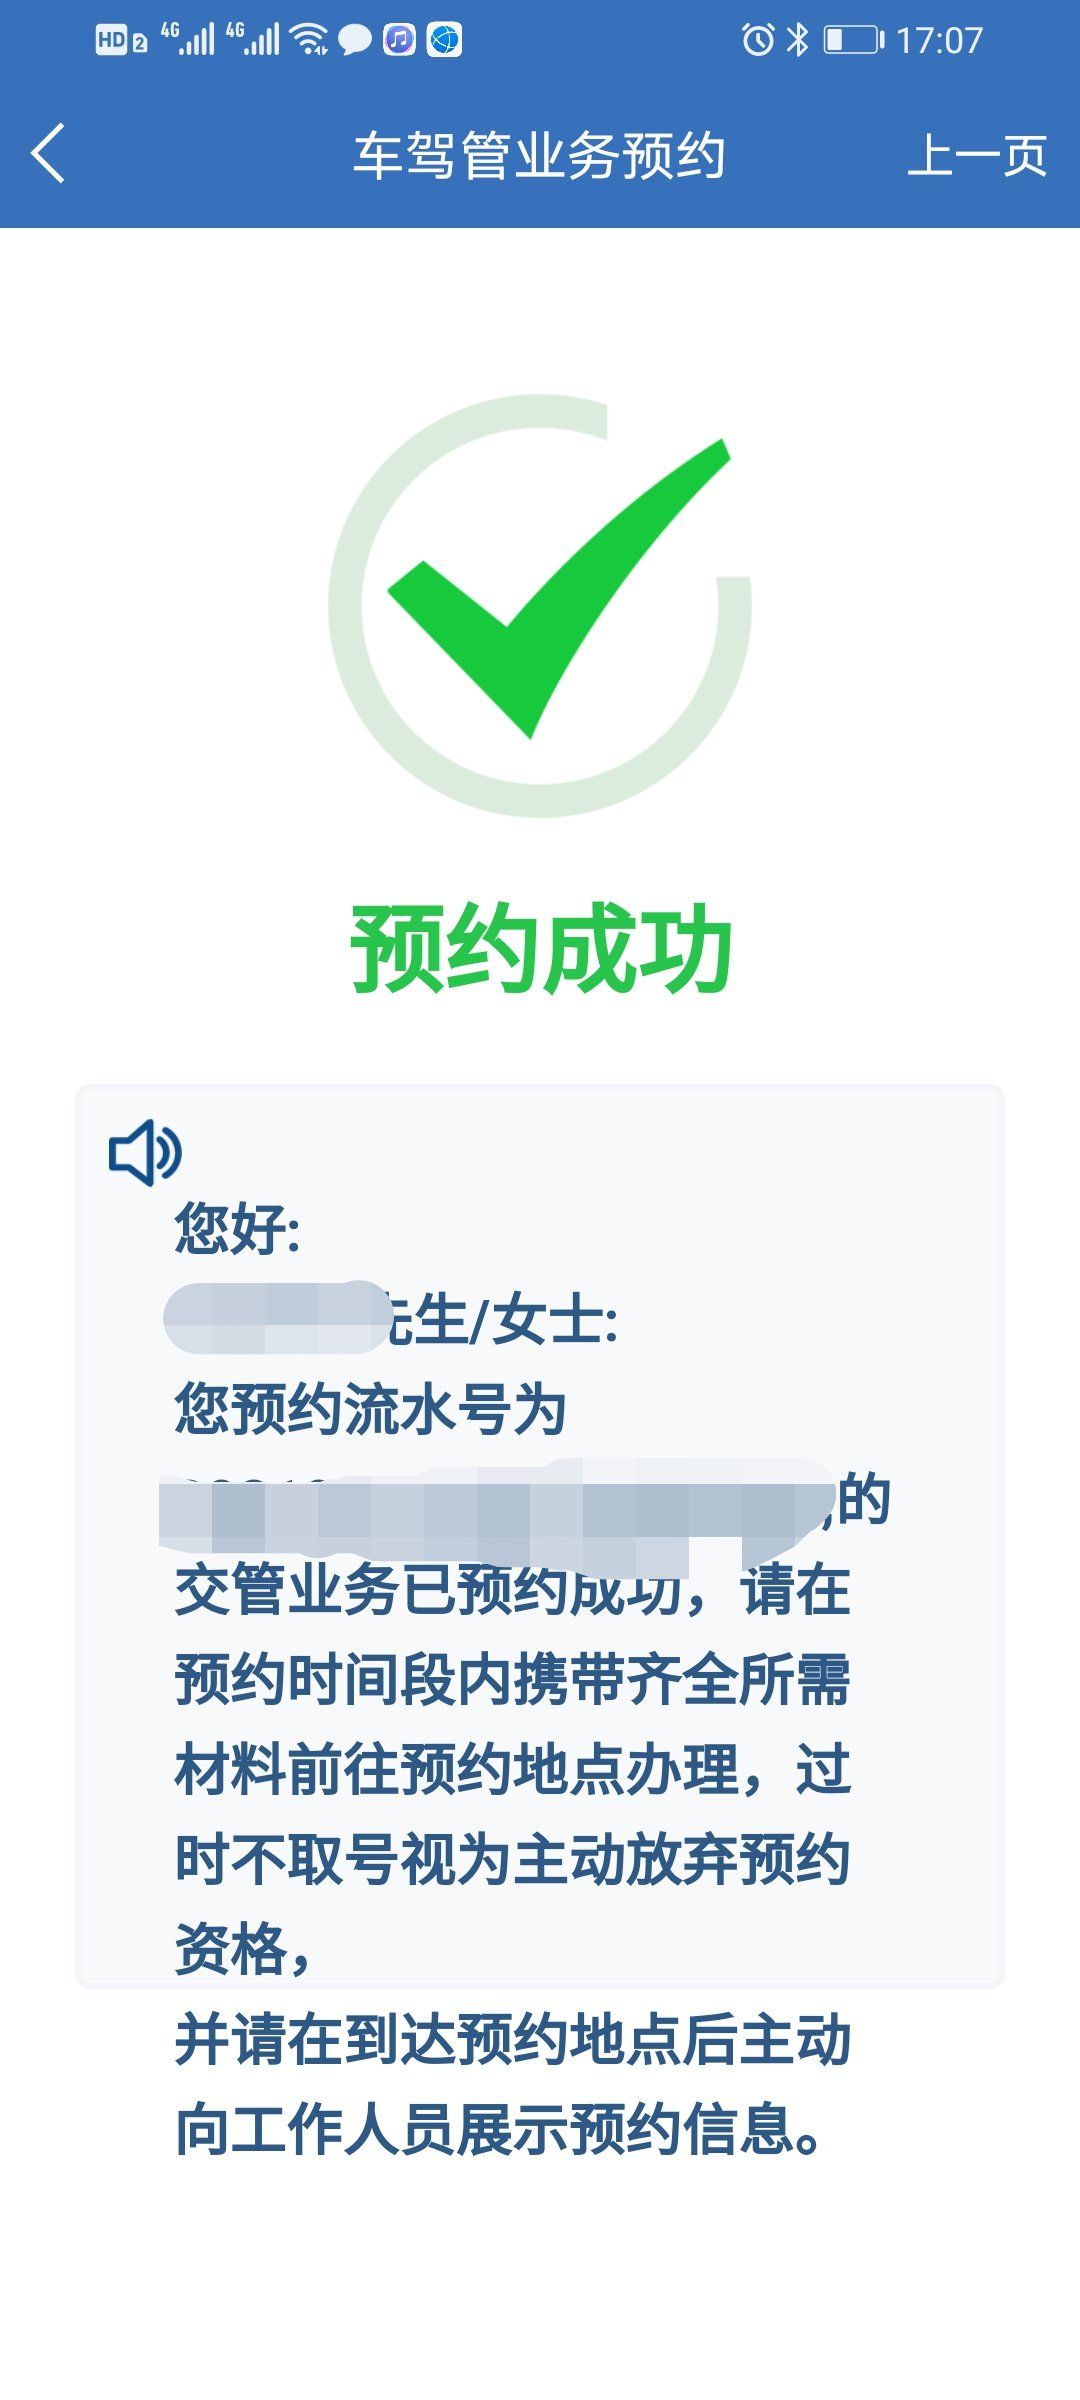 上海机动车上牌网上预约教程